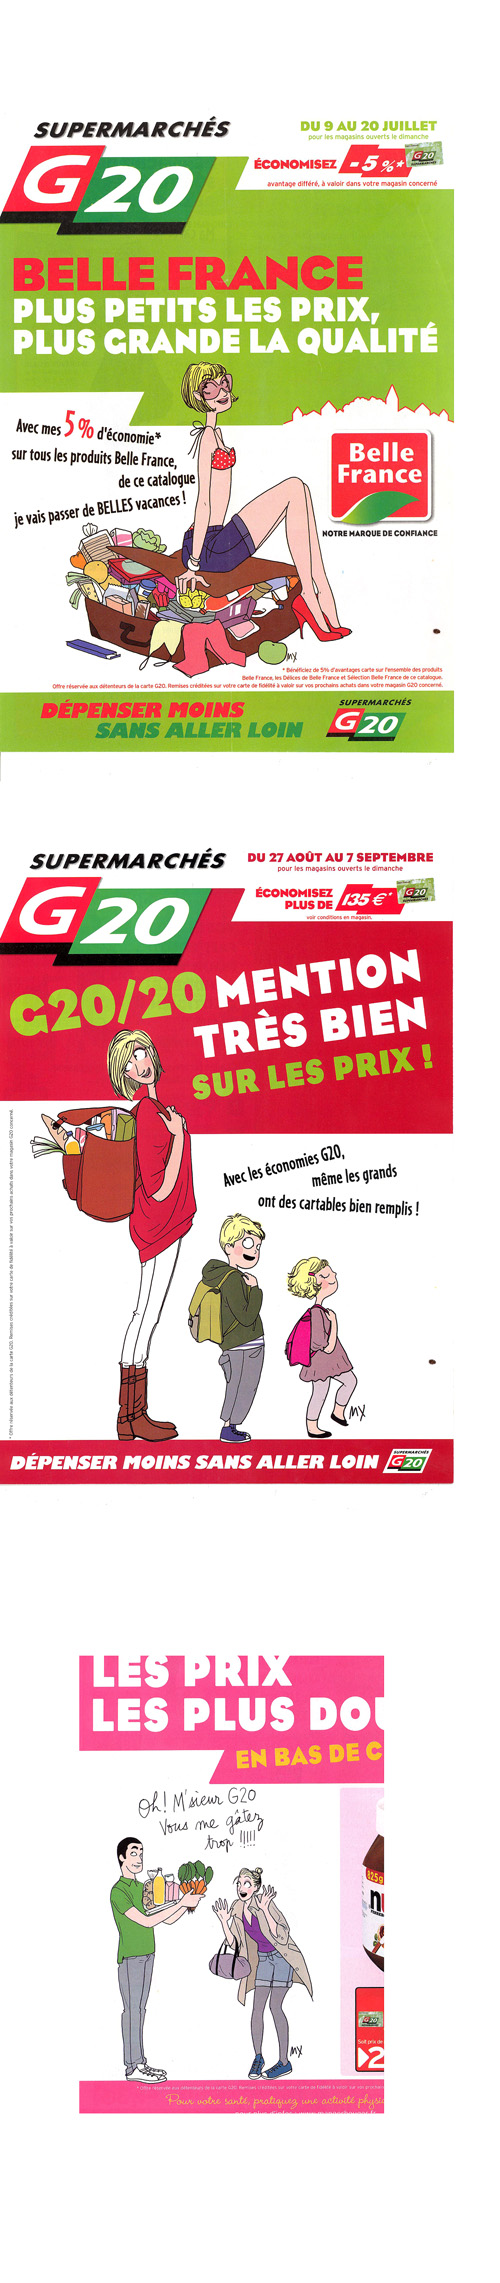 G20 002